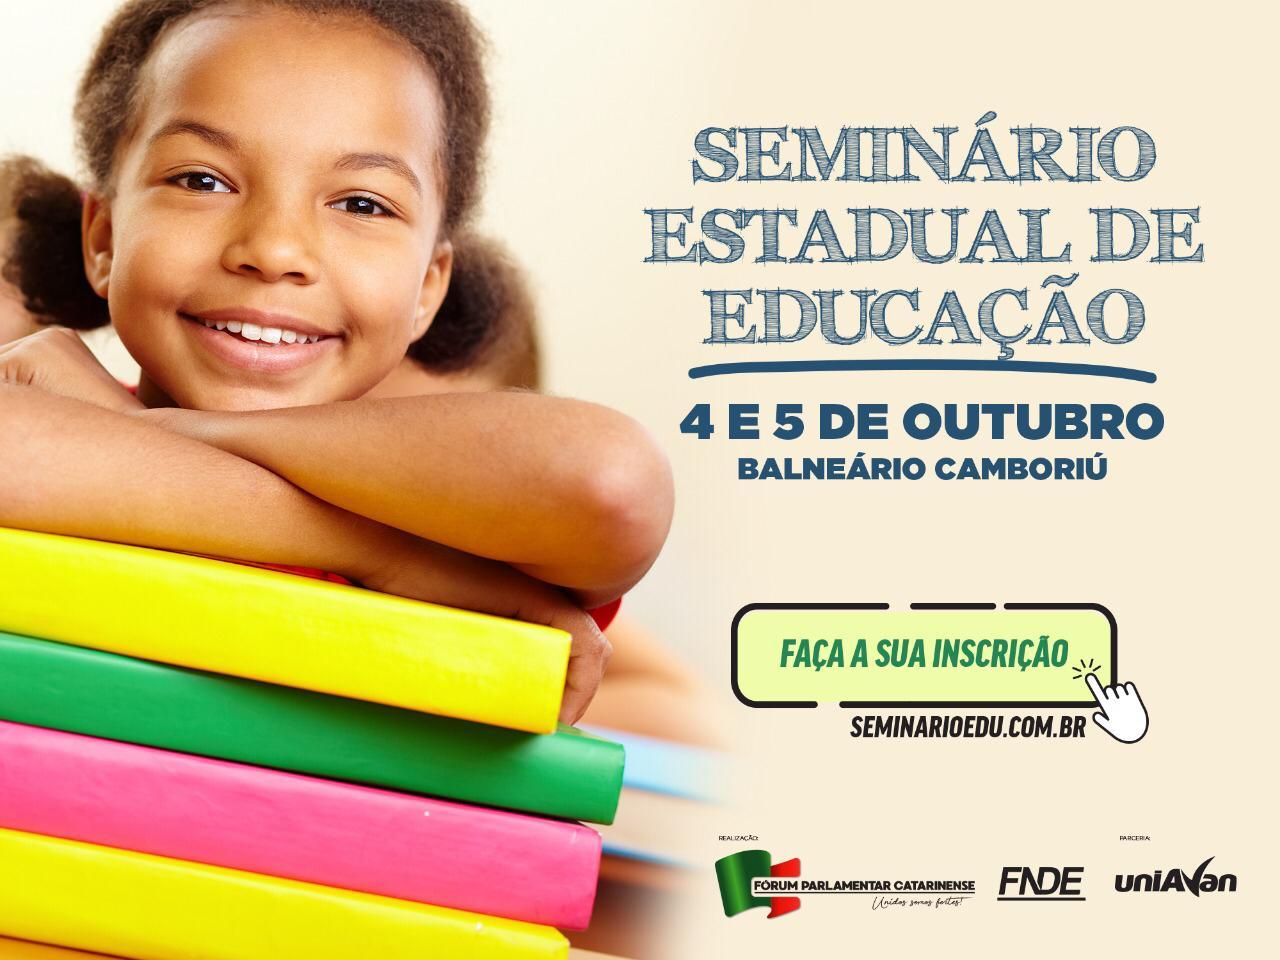 Santa Catarina recebe primeiro Seminário Estadual de Educação neste fim de semana